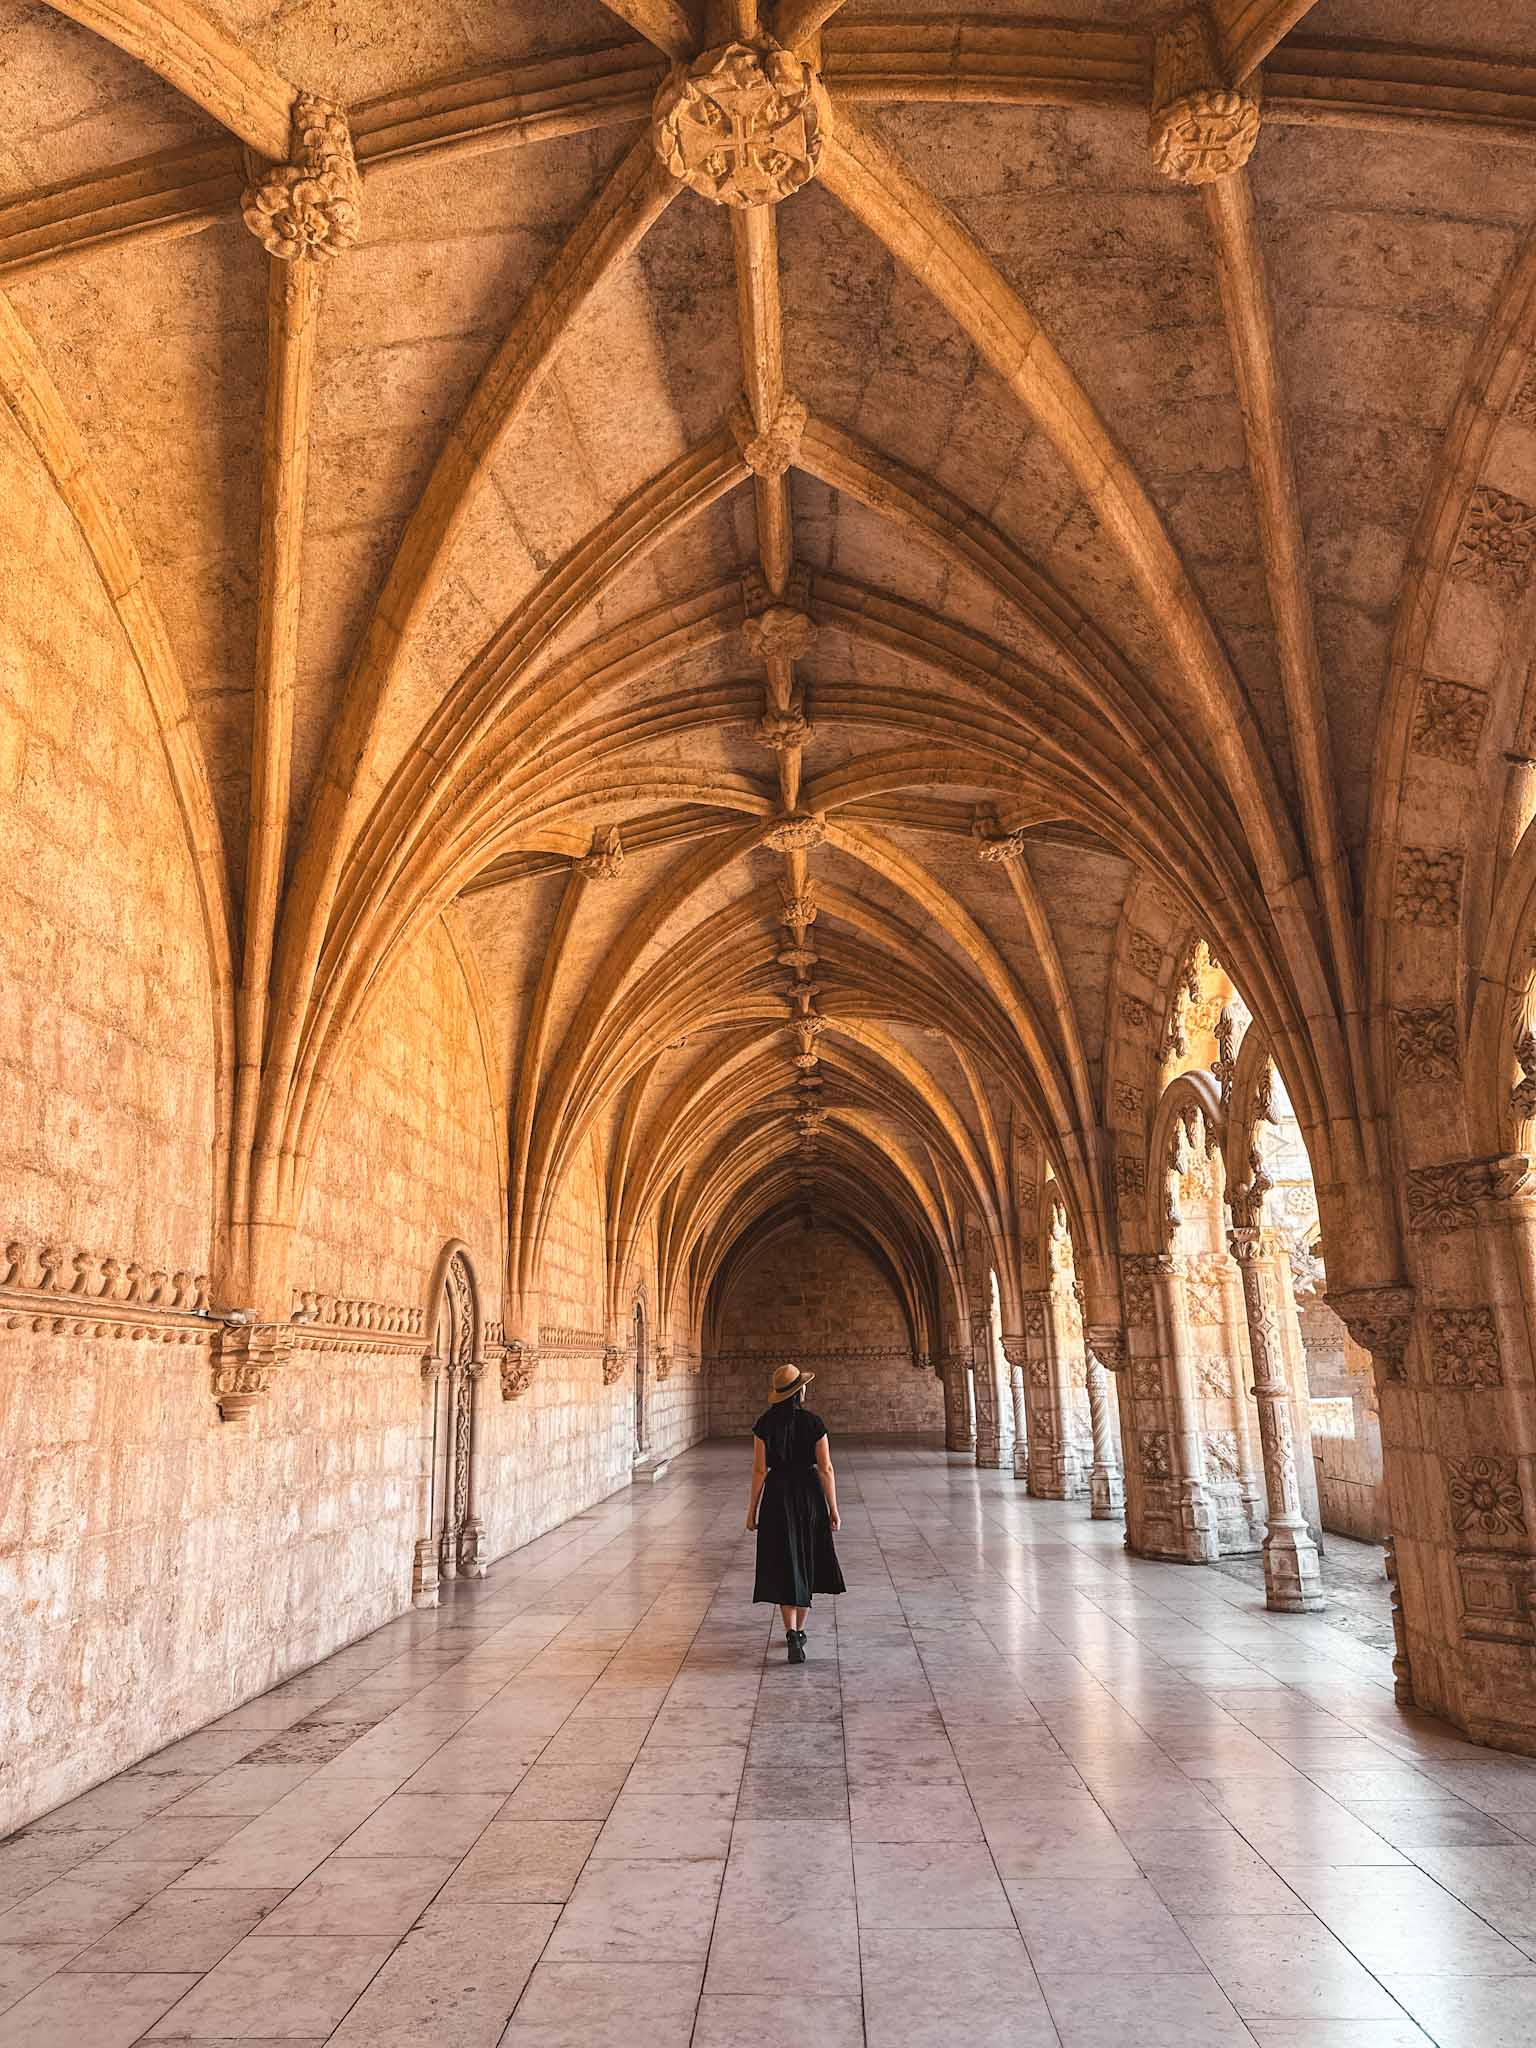 Best Instagram photo spots in Lisbon - Jerónimos Monastery